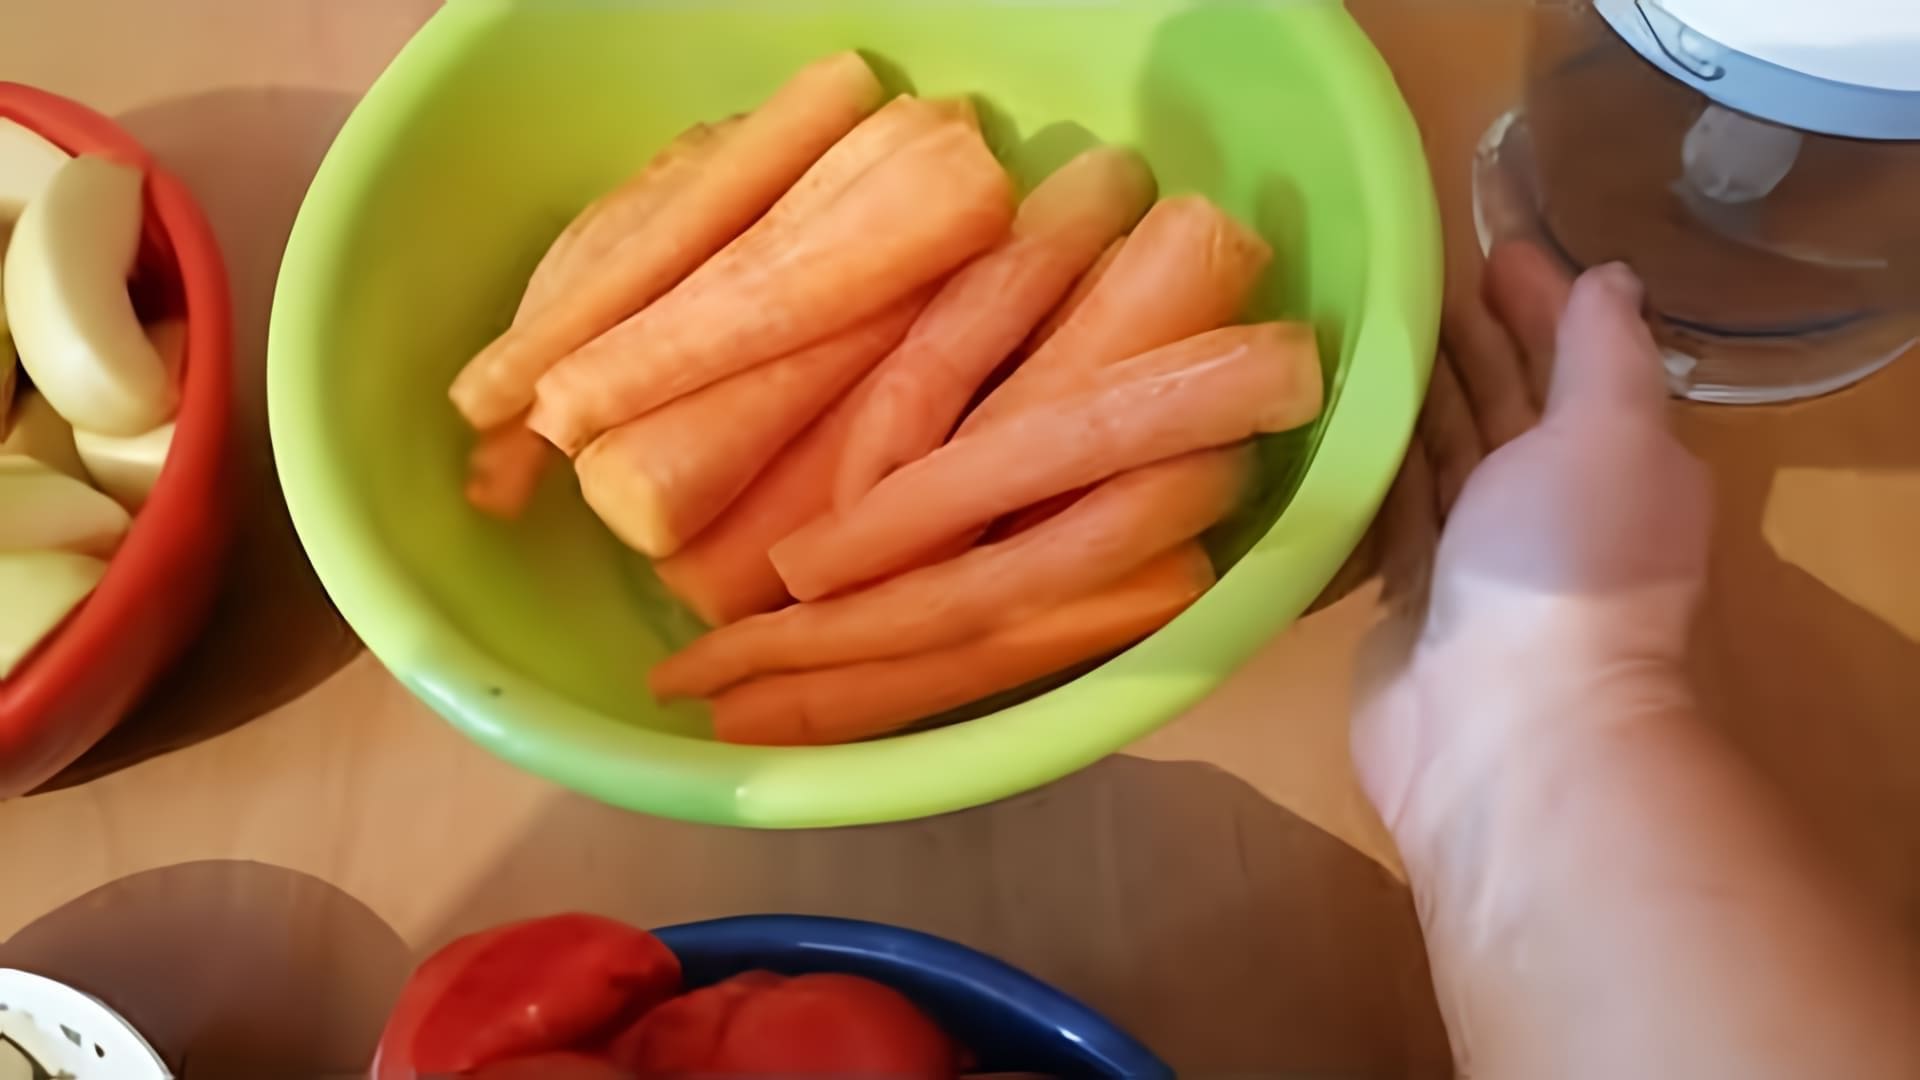 В этом видео демонстрируется процесс приготовления аджики с яблоками и морковью